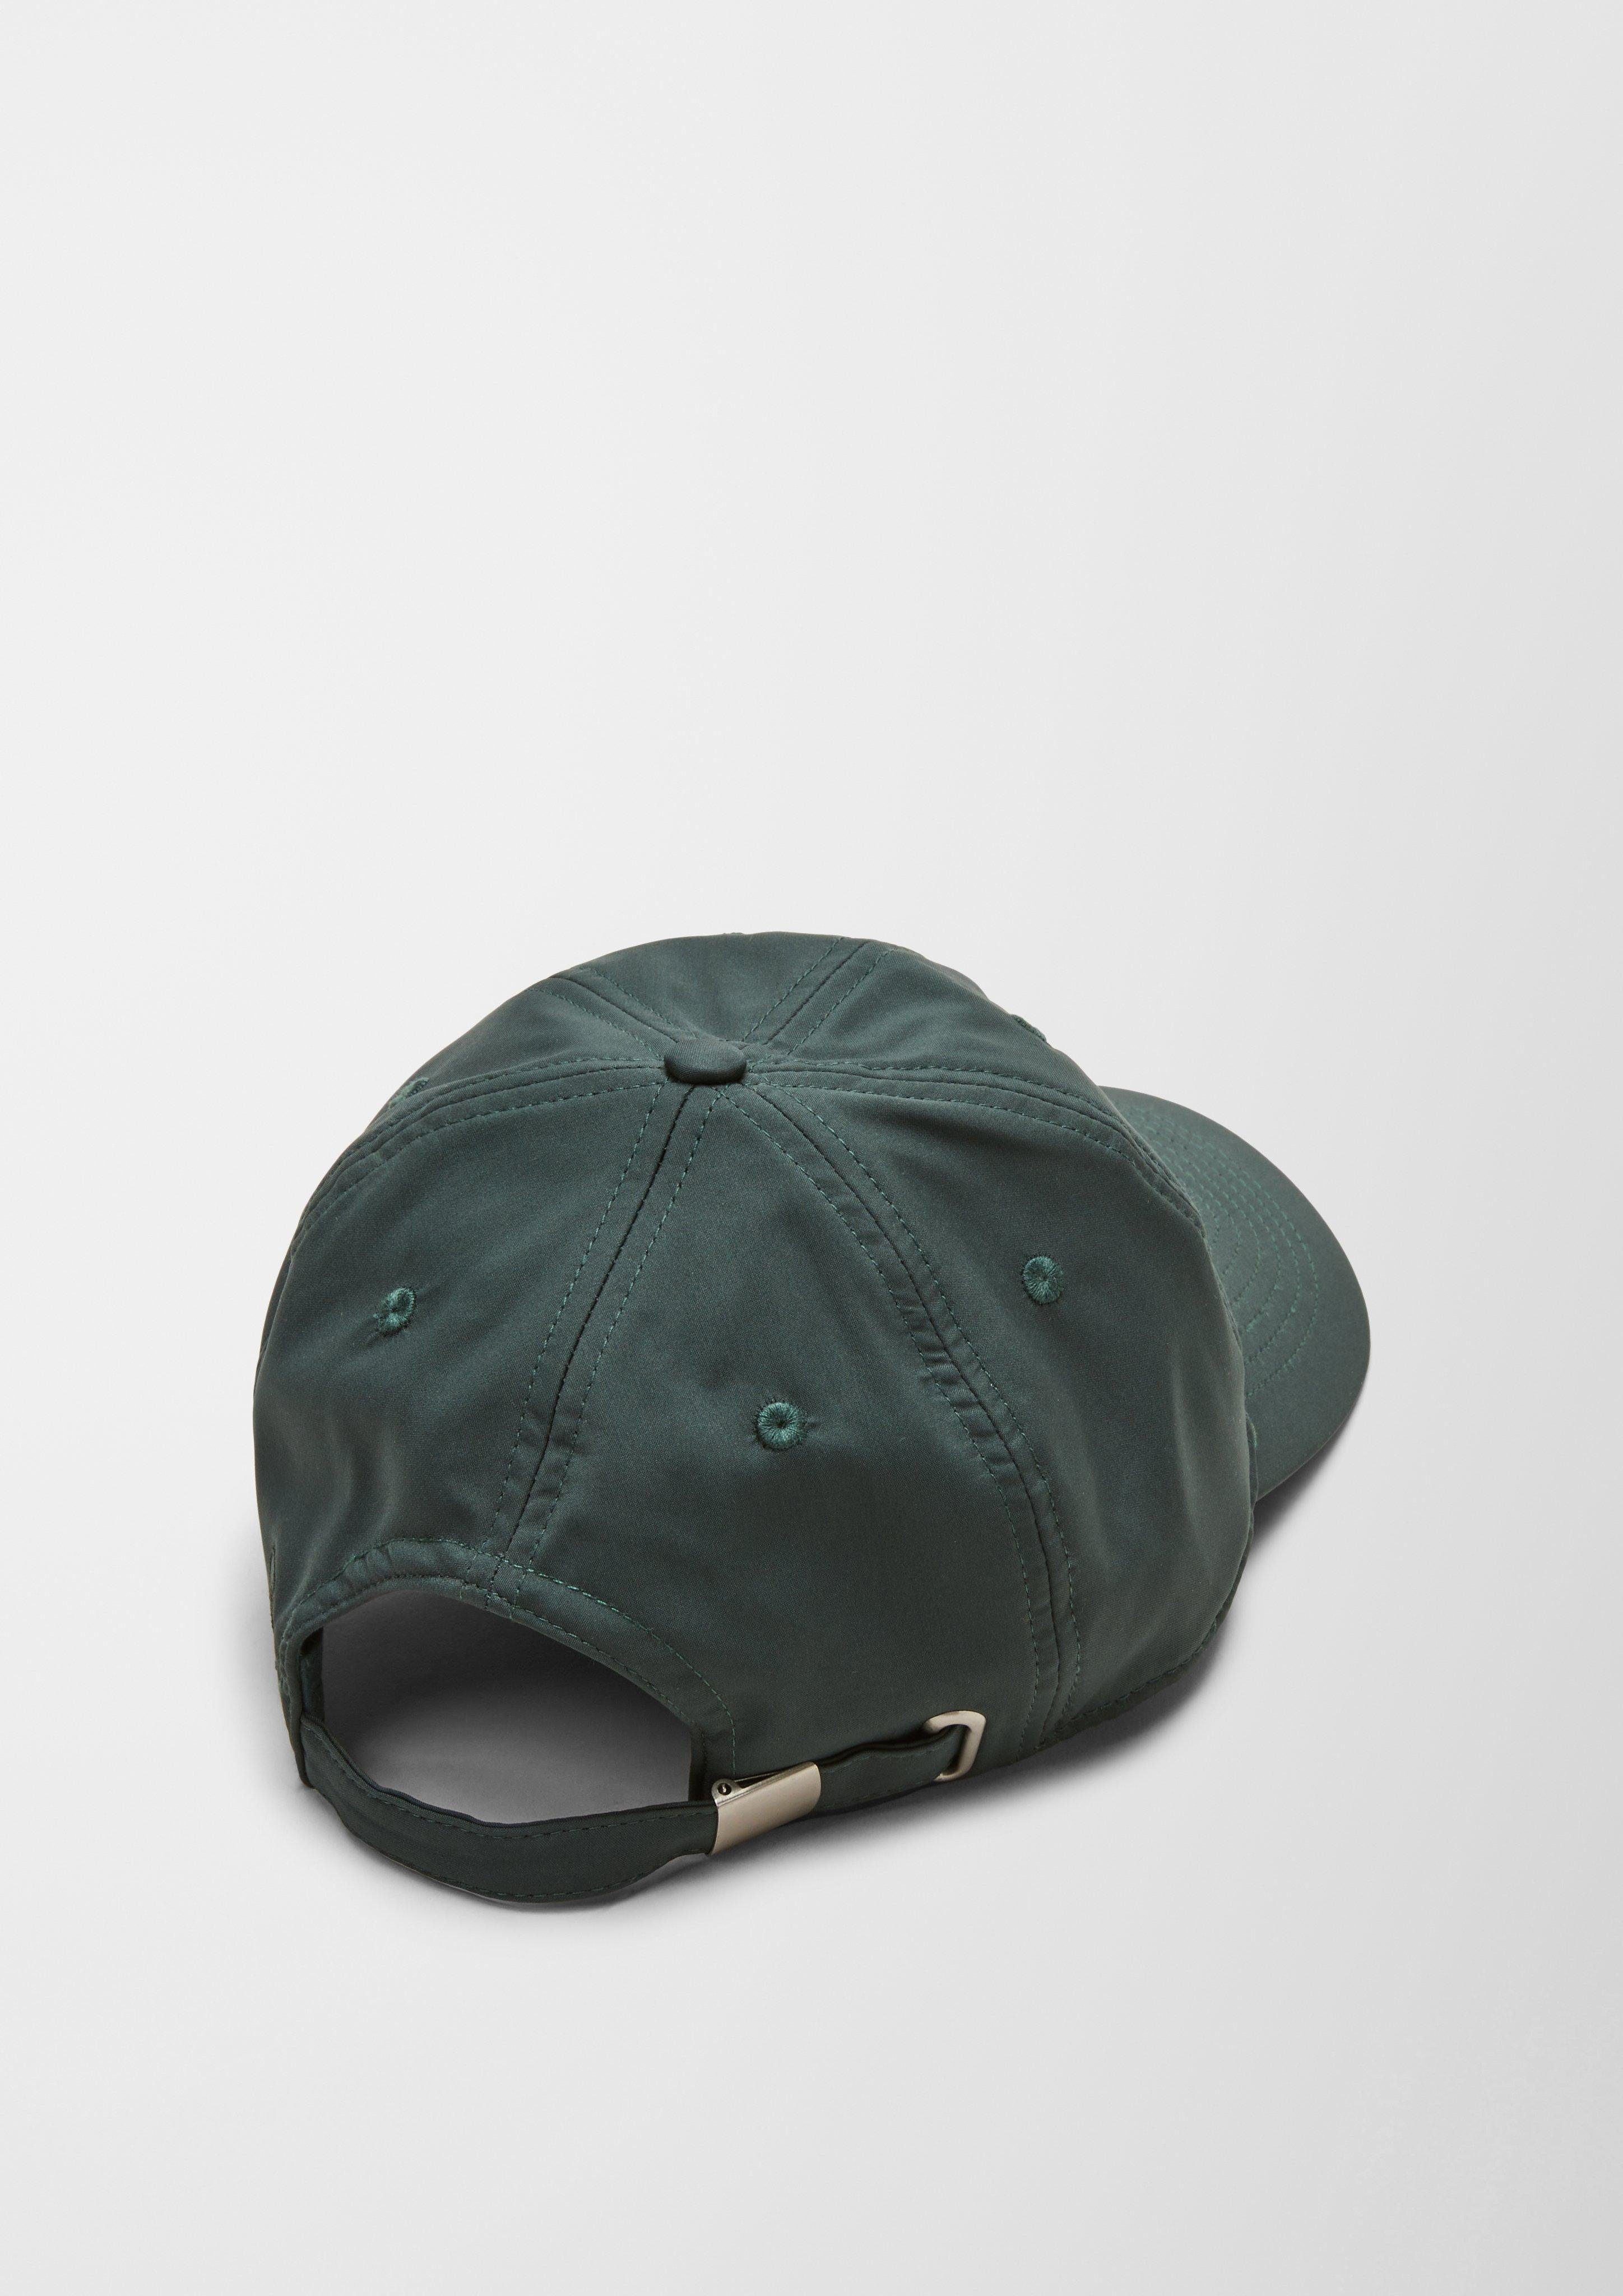 Look s.Oliver Baseball Logo Kappe Cap im cleanen olivgrün